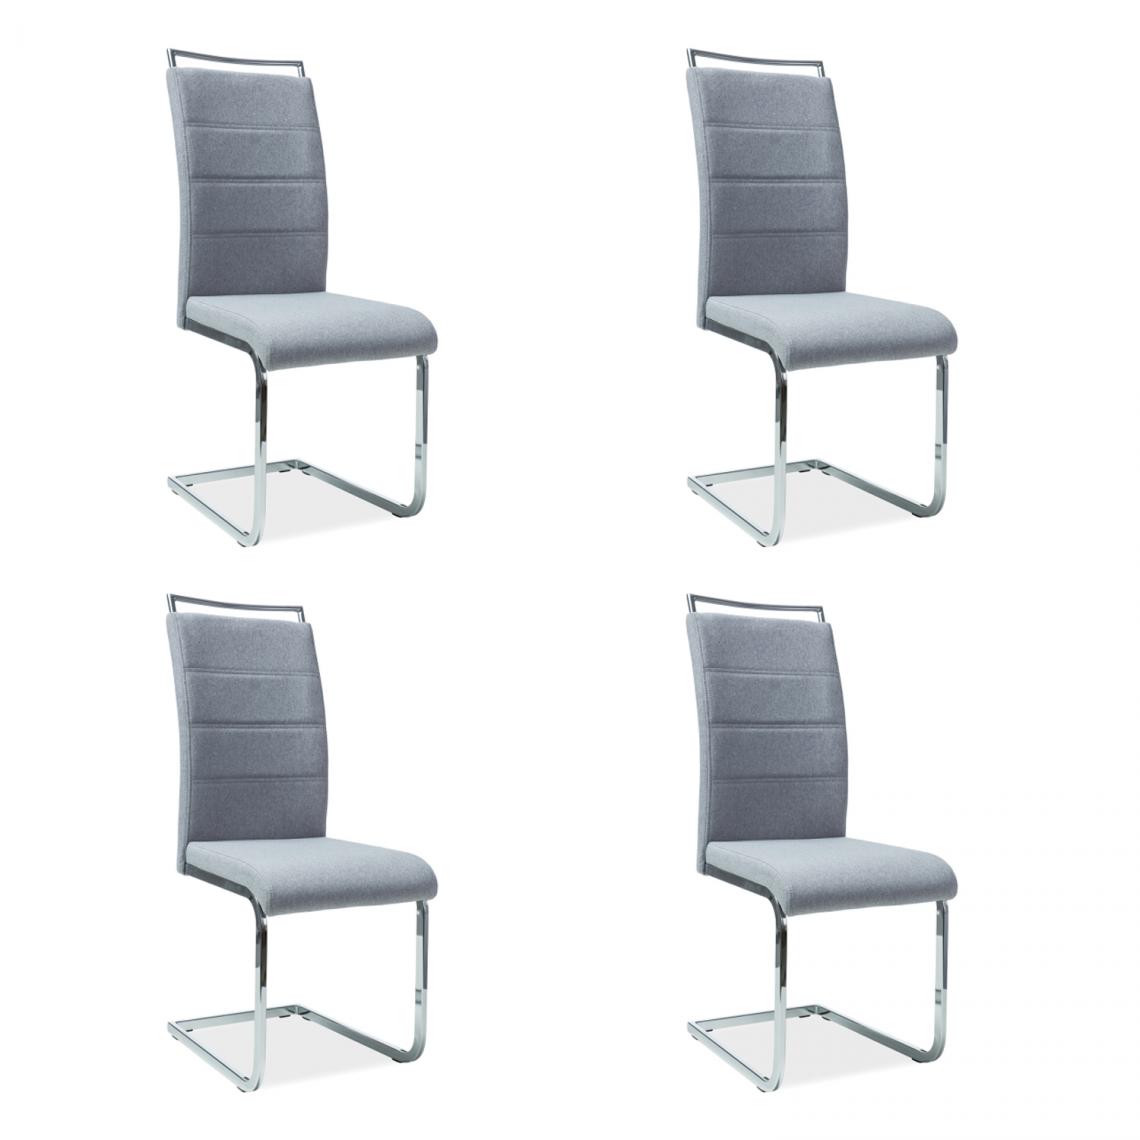 Hucoco - SHYRA - Lot de 4 chaises style moderne - 102x41x42 cm - Similicuir - Chaise salle à manger - Gris - Chaises